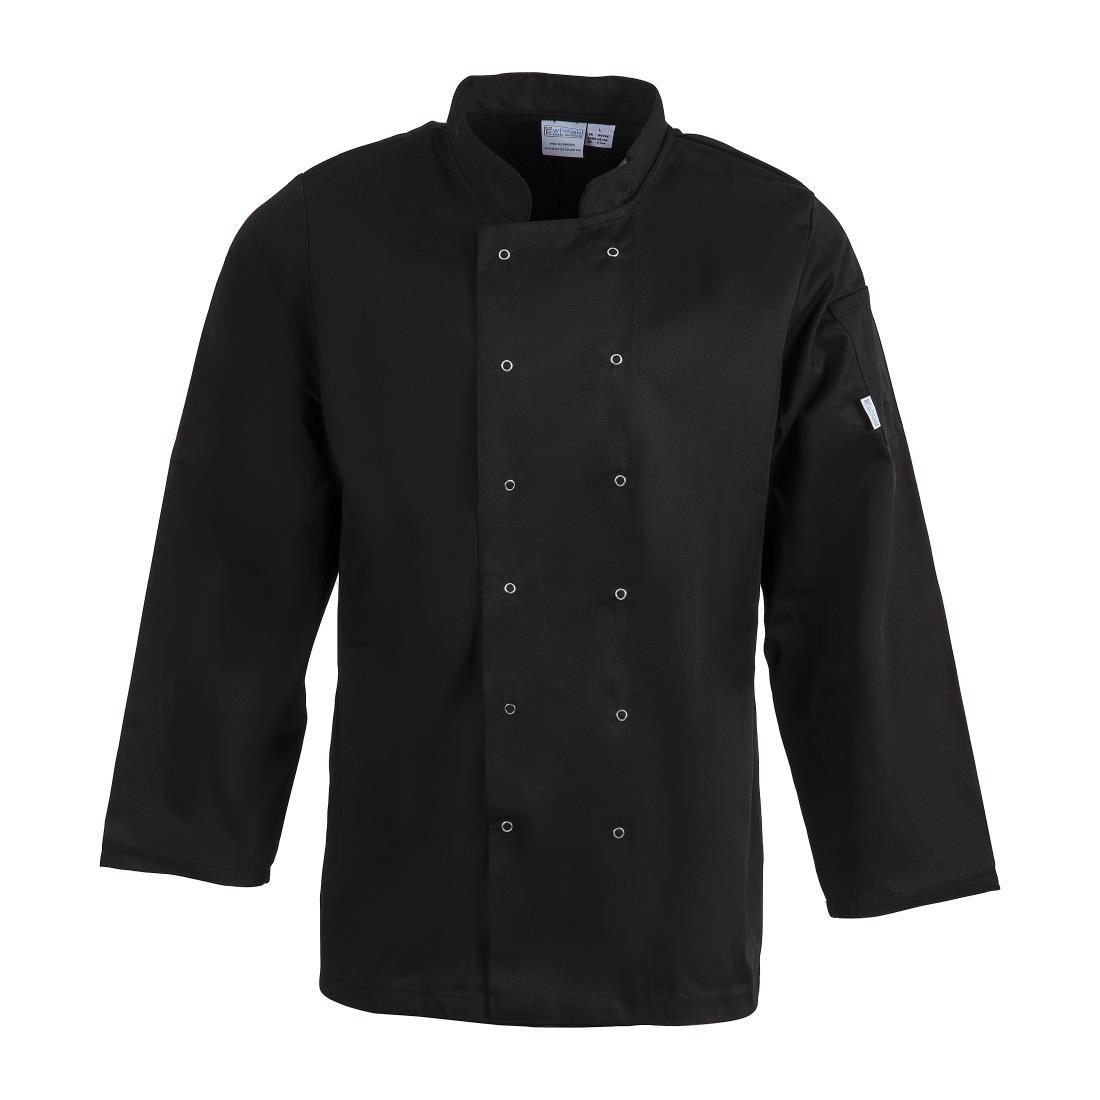 Whites Vegas Unisex Chefs Jacket Long Sleeve Black 5XL - A438-5XL  - 1